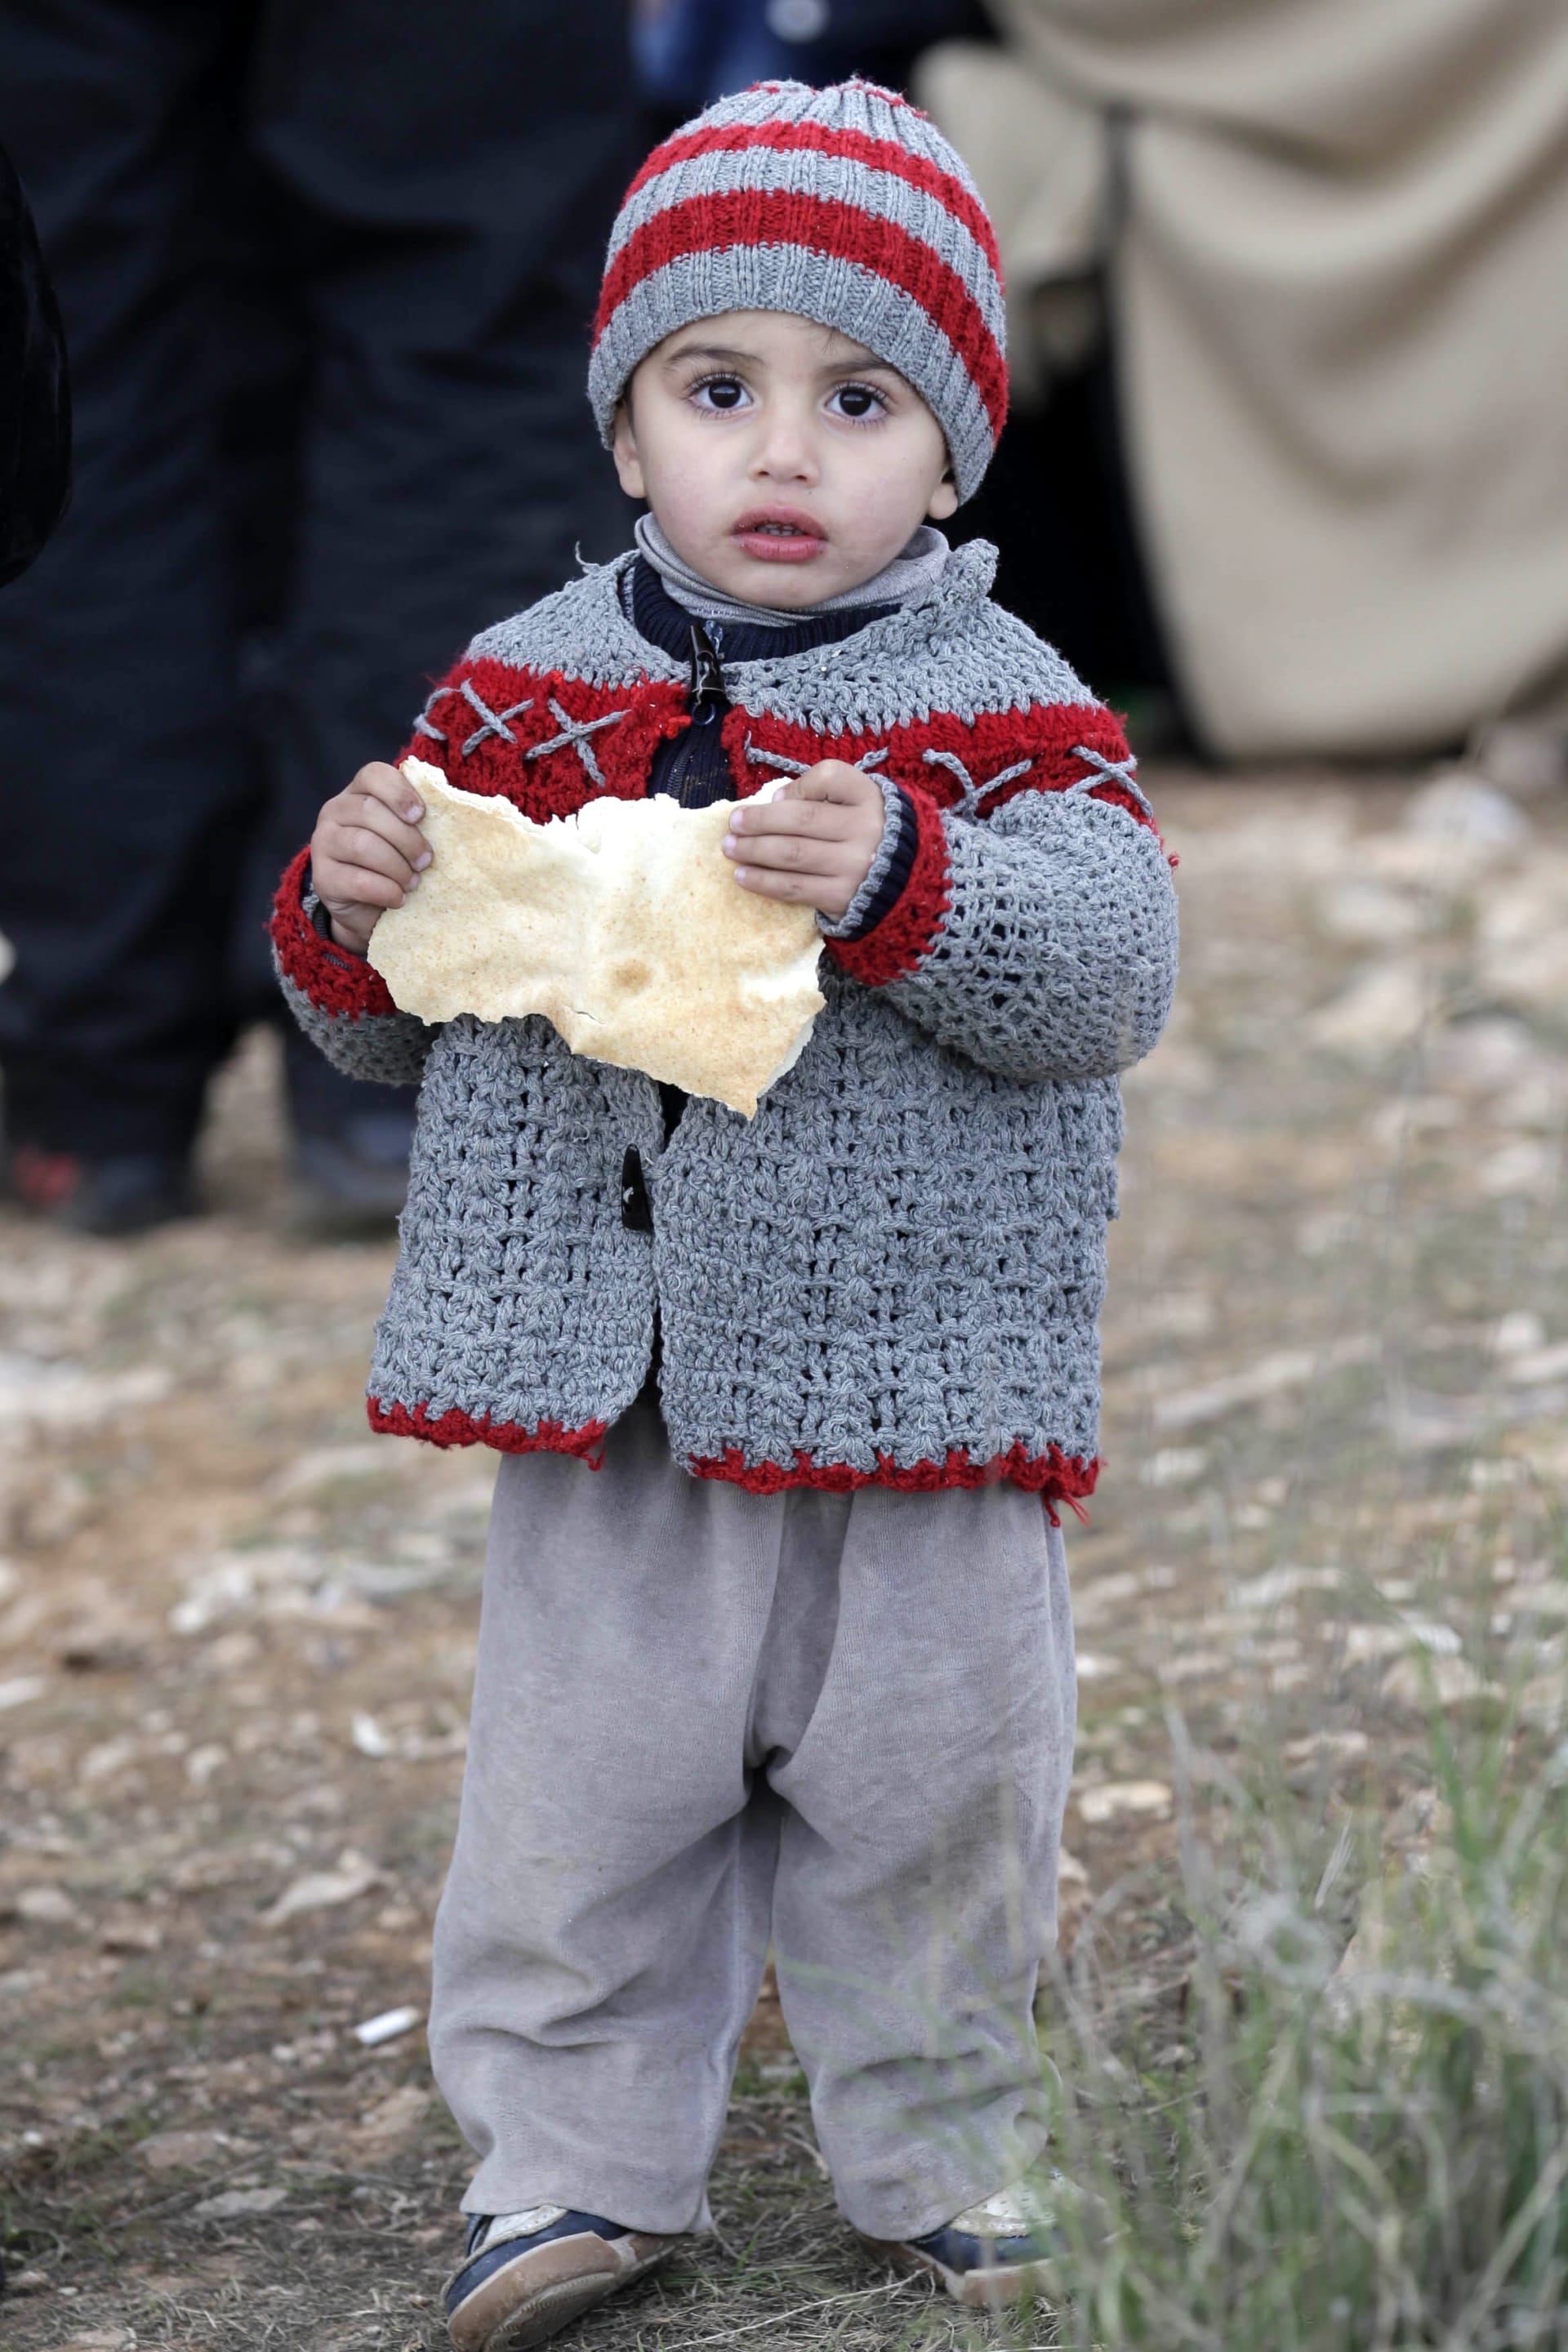 برنامج الغذاء العالمي: سنوقف توزيع المساعدات وسيجوع اللاجئون السوريون في الشتاء